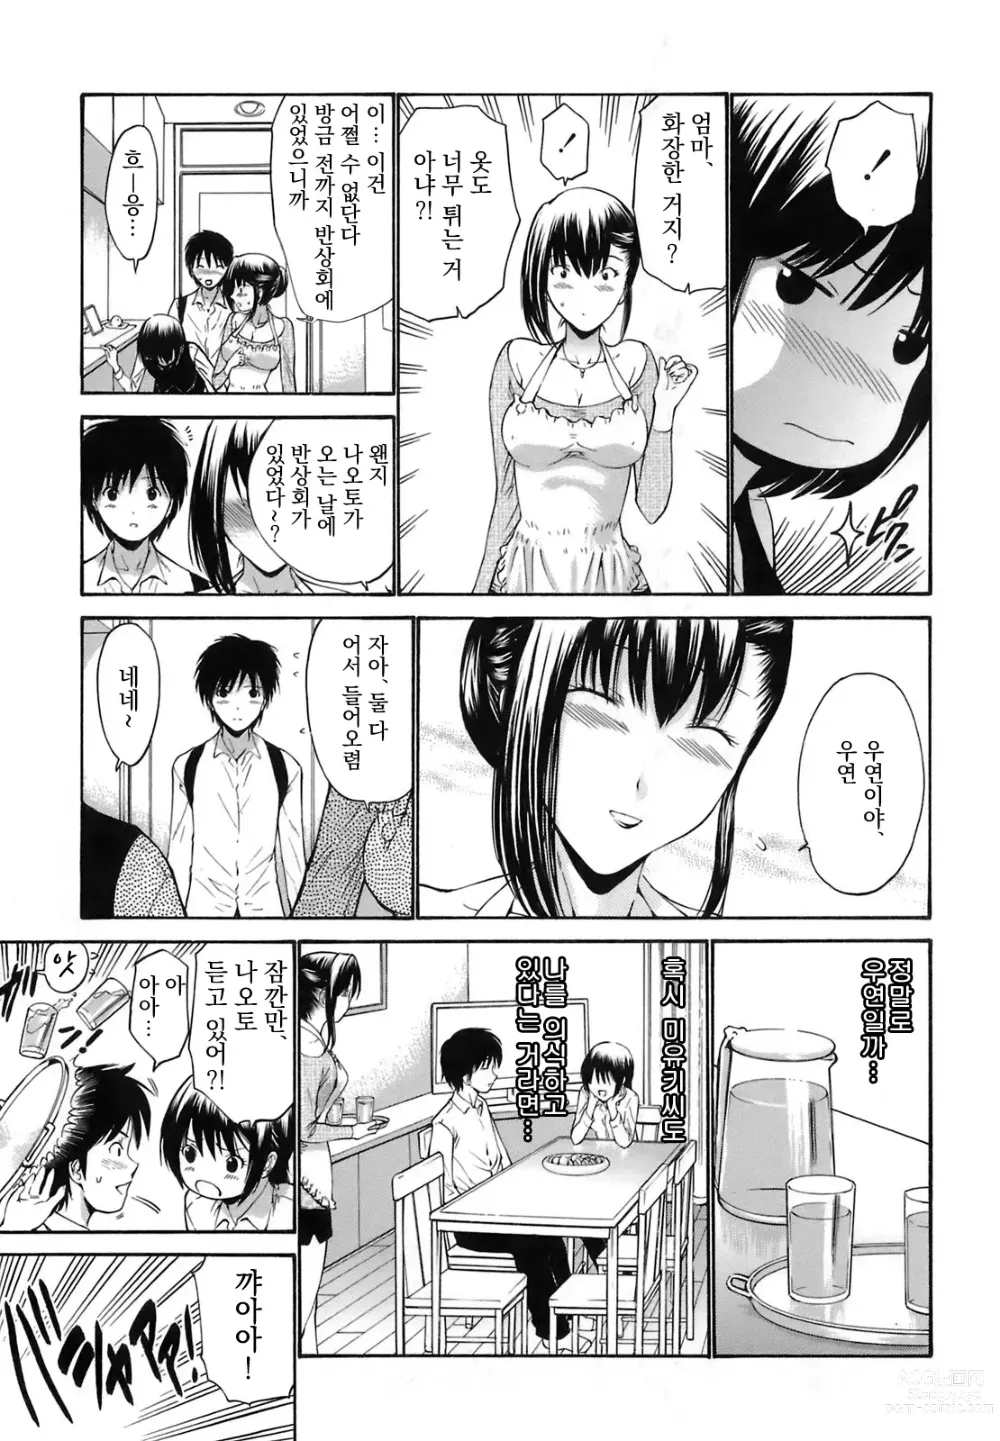 Page 3 of manga kanojo no haha -Zenpen-